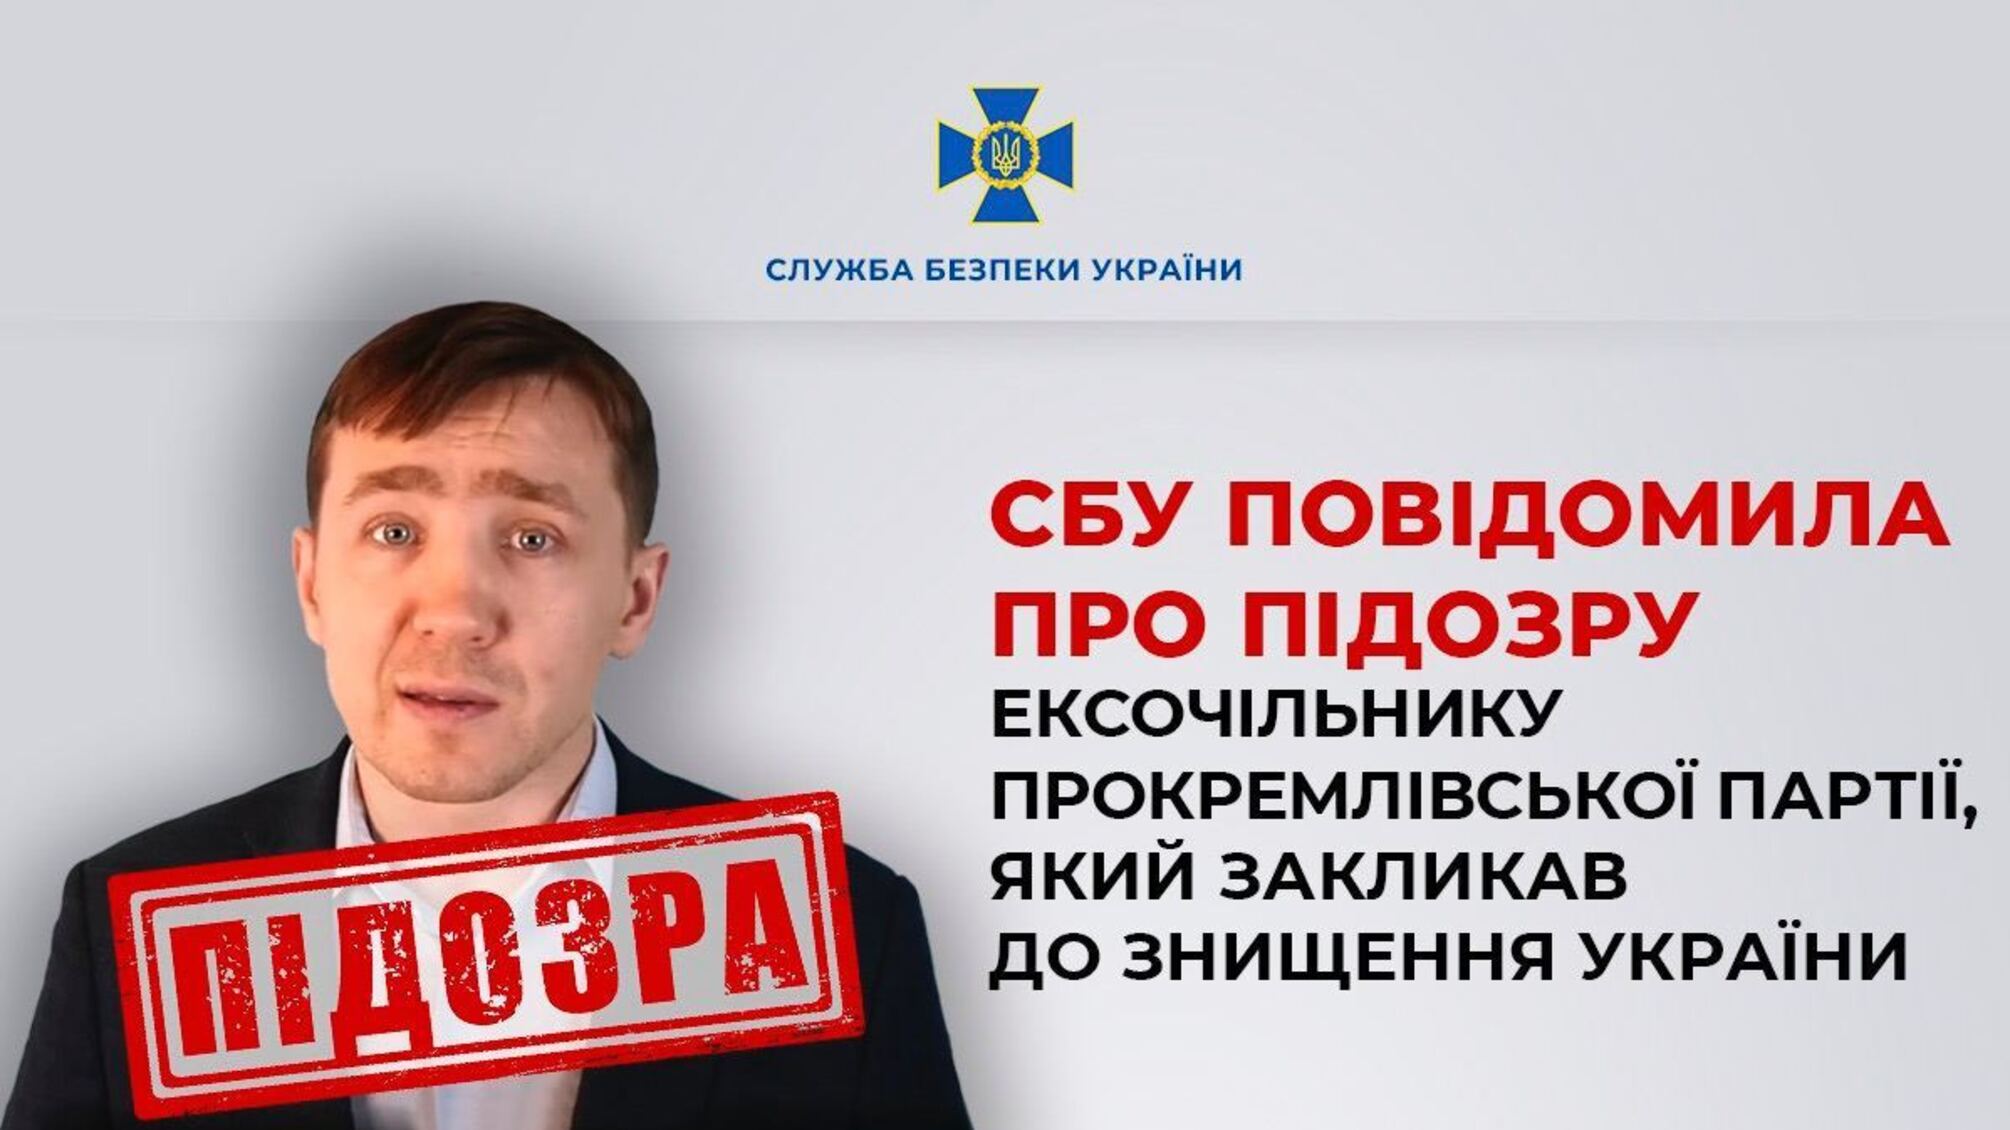 Российский блоггер Василец получил подозрение после призывов о захвате Украины